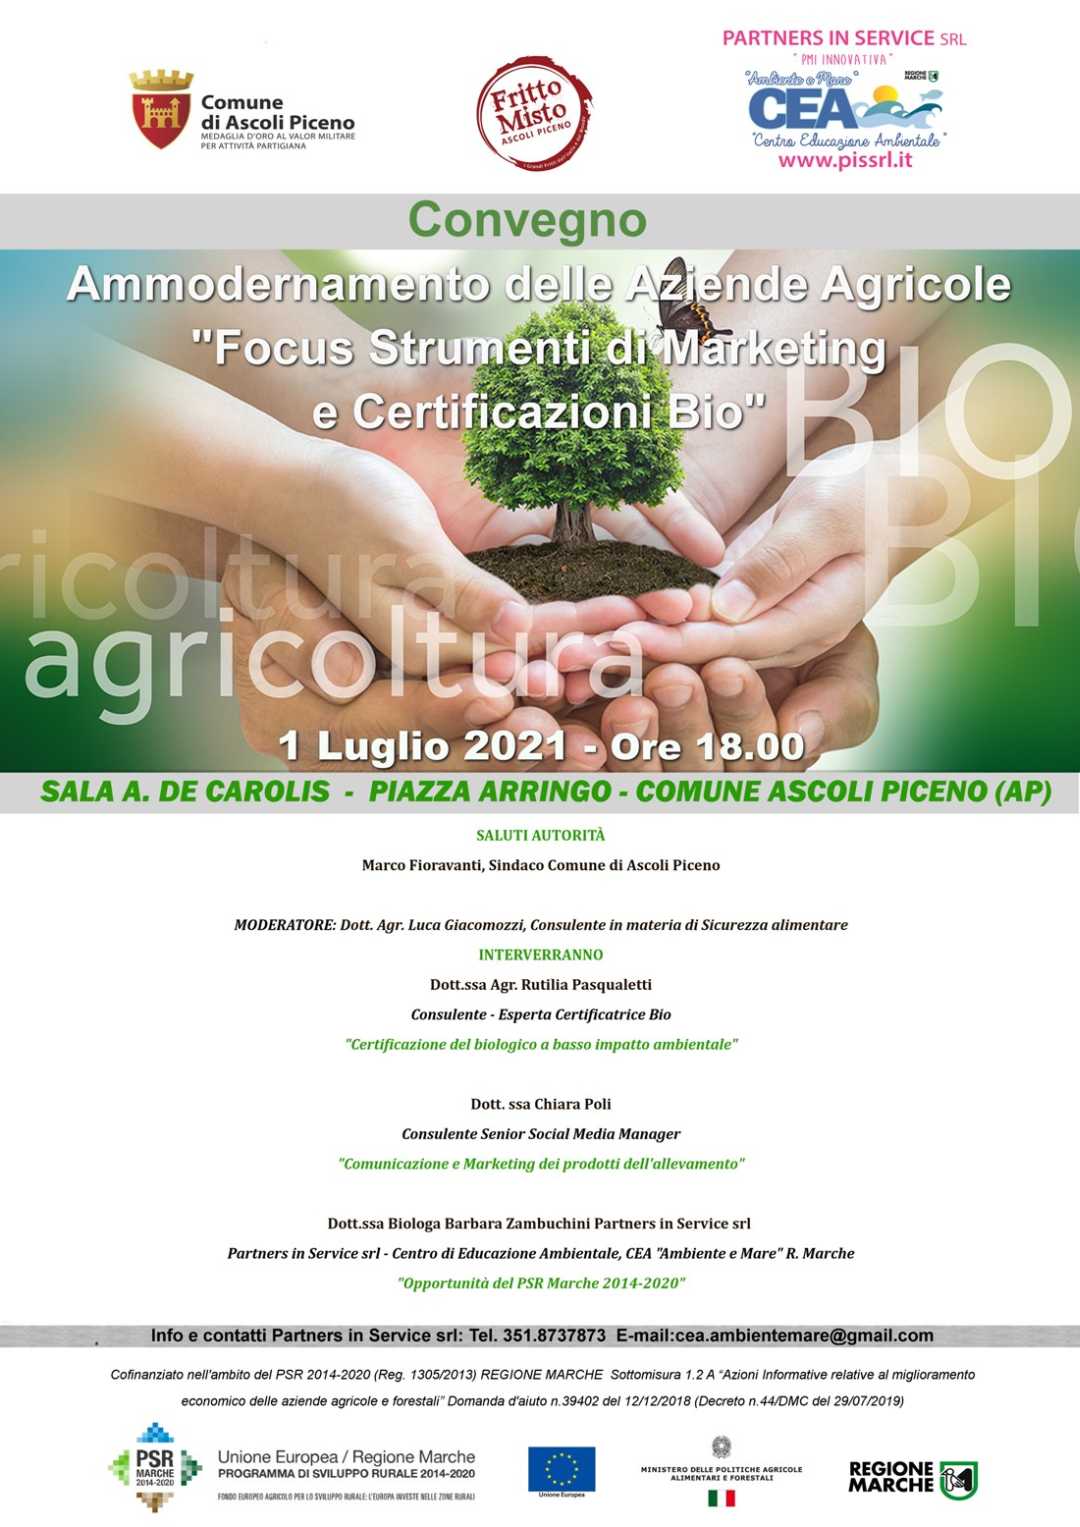 Ammodernamento delle Aziende Agricole: focus Strumenti di Marketing e Certificazioni Bio